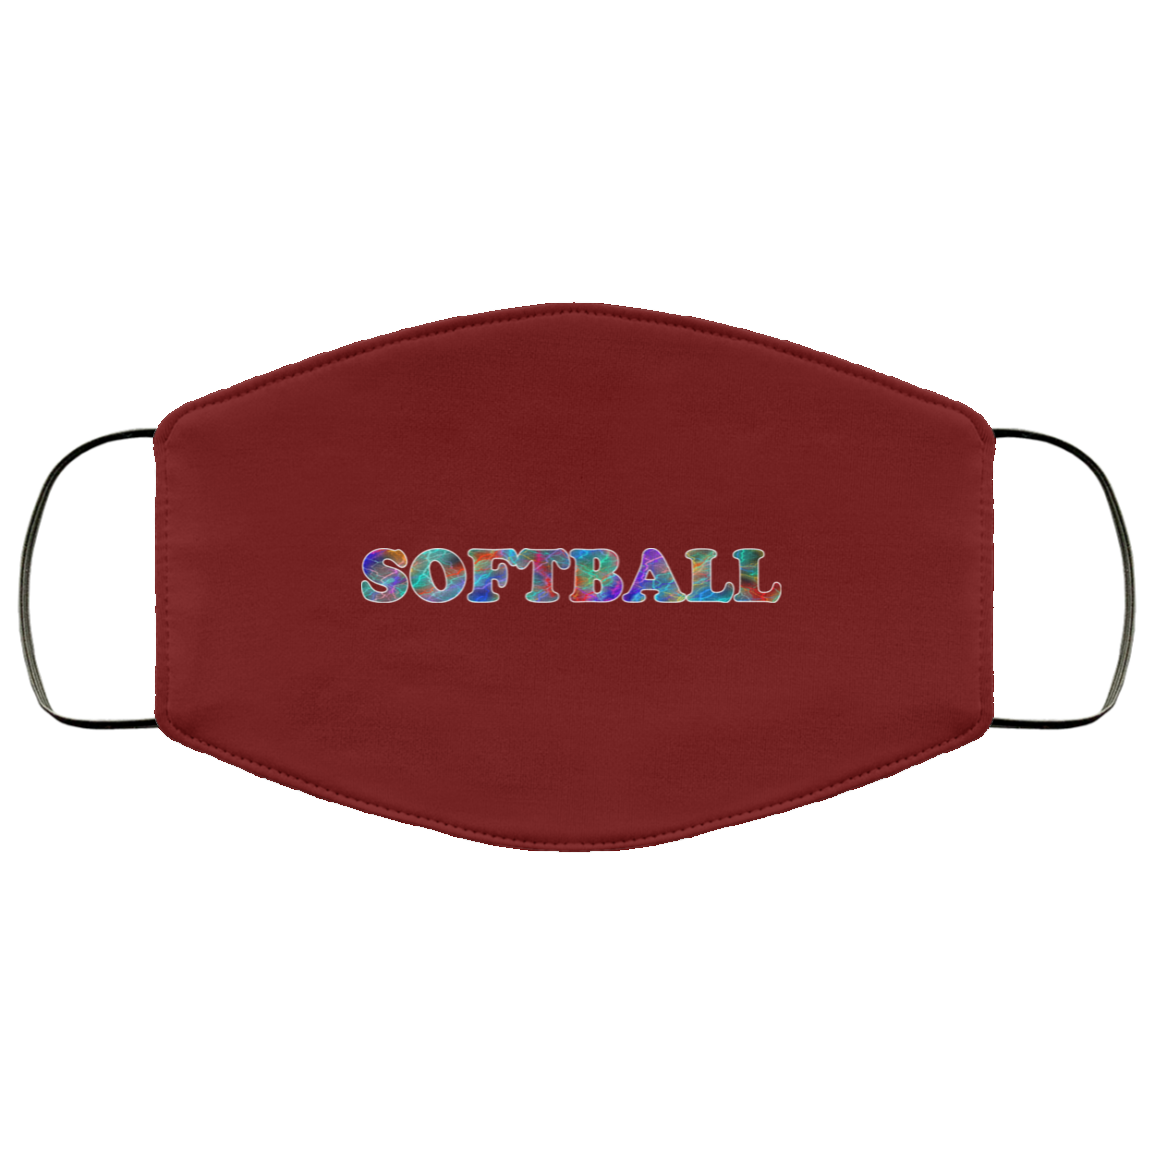 Softball 2 Layer Protective Mask